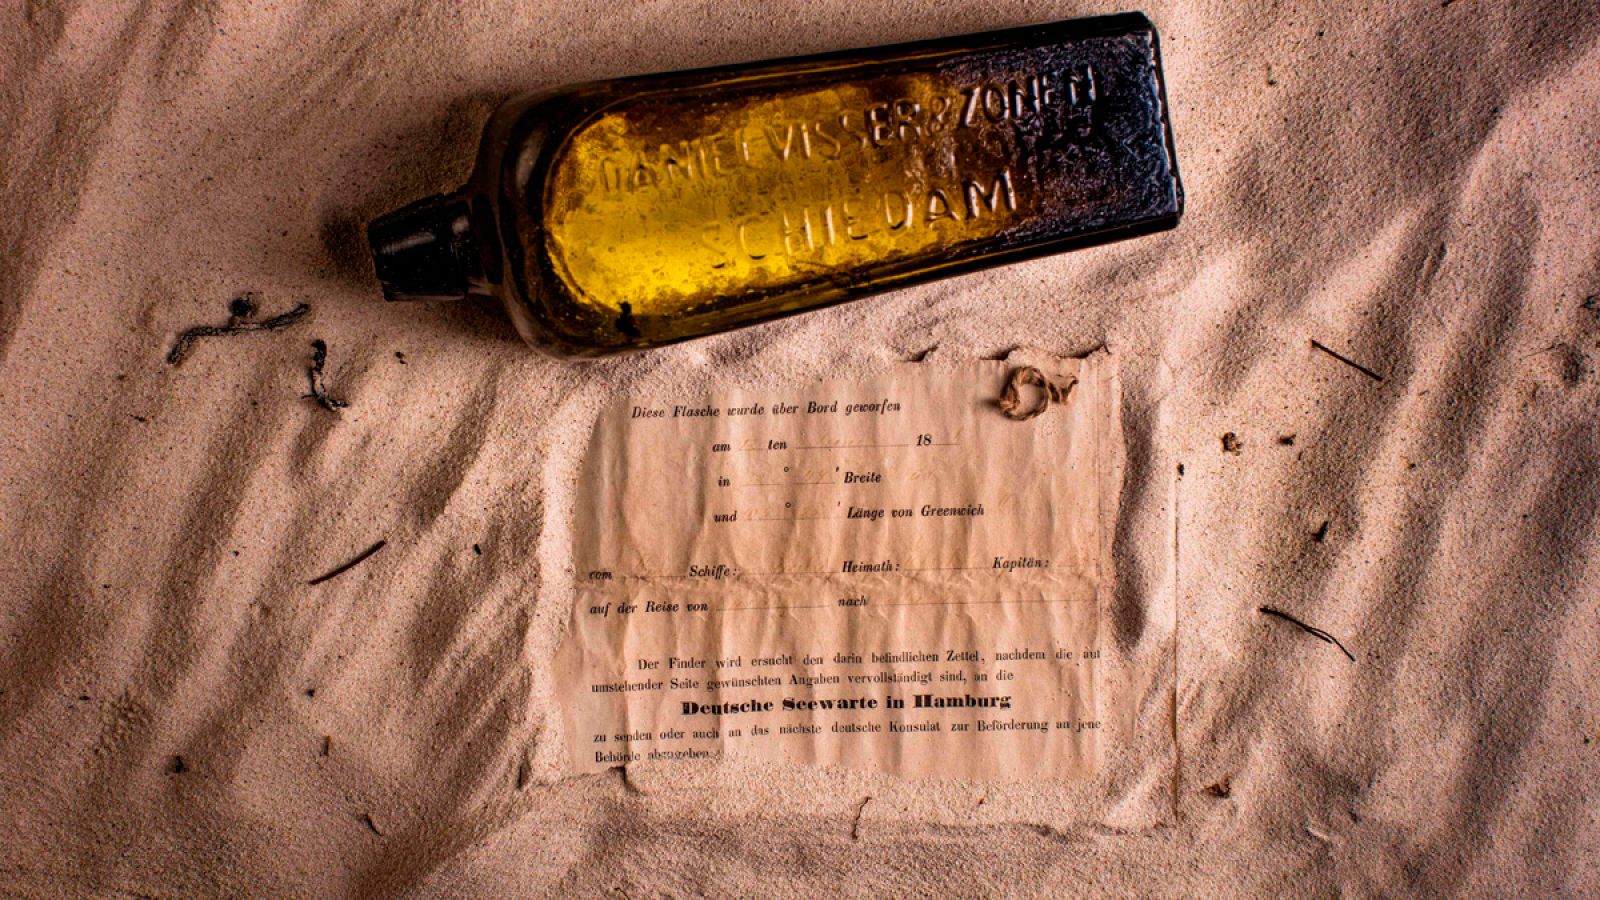 La botella, de 132 años de antigüedad, y el mensaje que contenía.